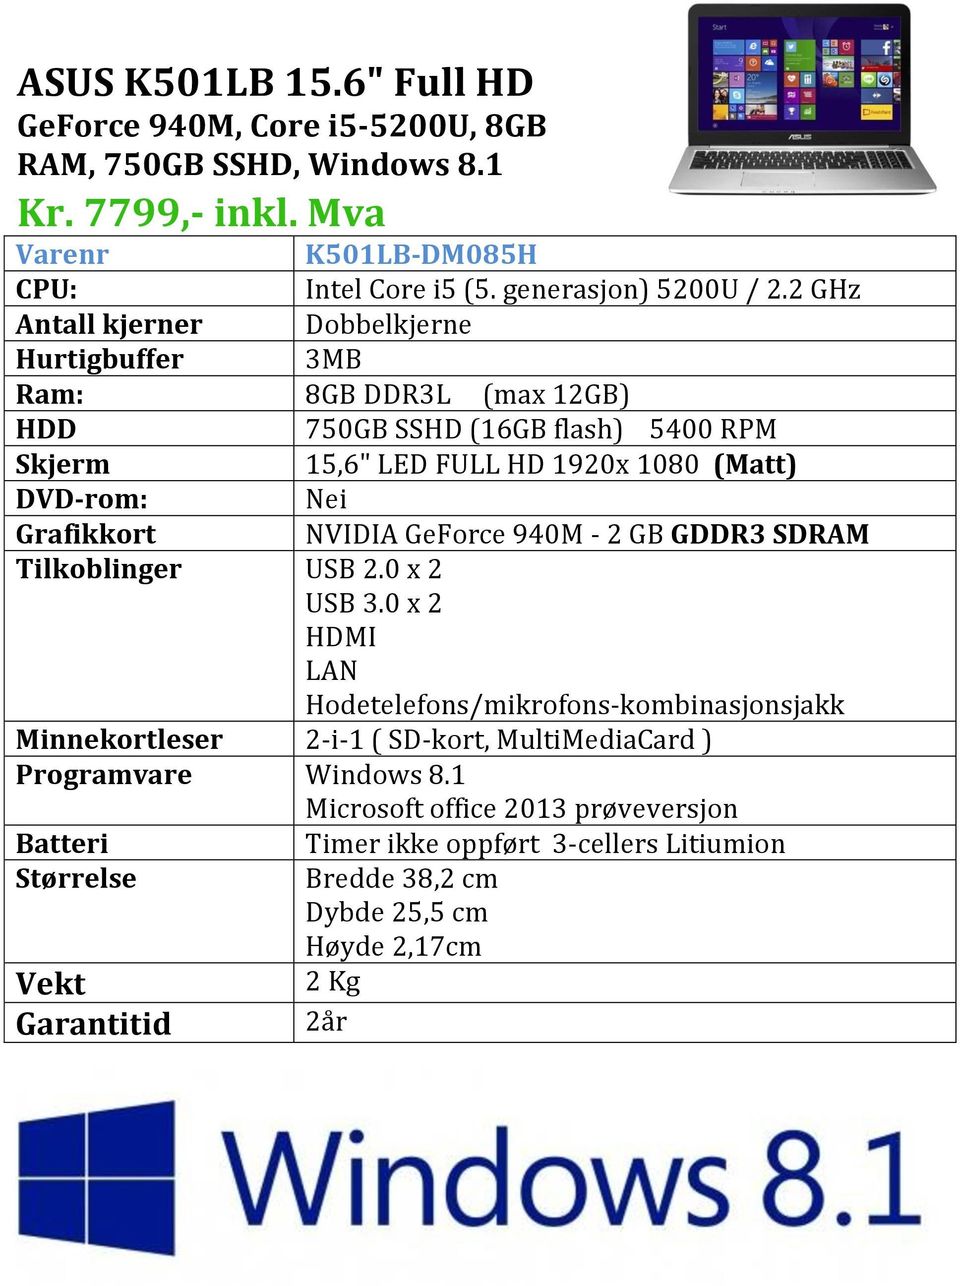 2 GHz Antall kjerner Dobbelkjerne Hurtigbuffer 3MB Ram: 8GB DDR3L (max 12GB) 750GB SSHD (16GB flash) 5400 RPM 15,6" LED FULL HD 1920x 1080